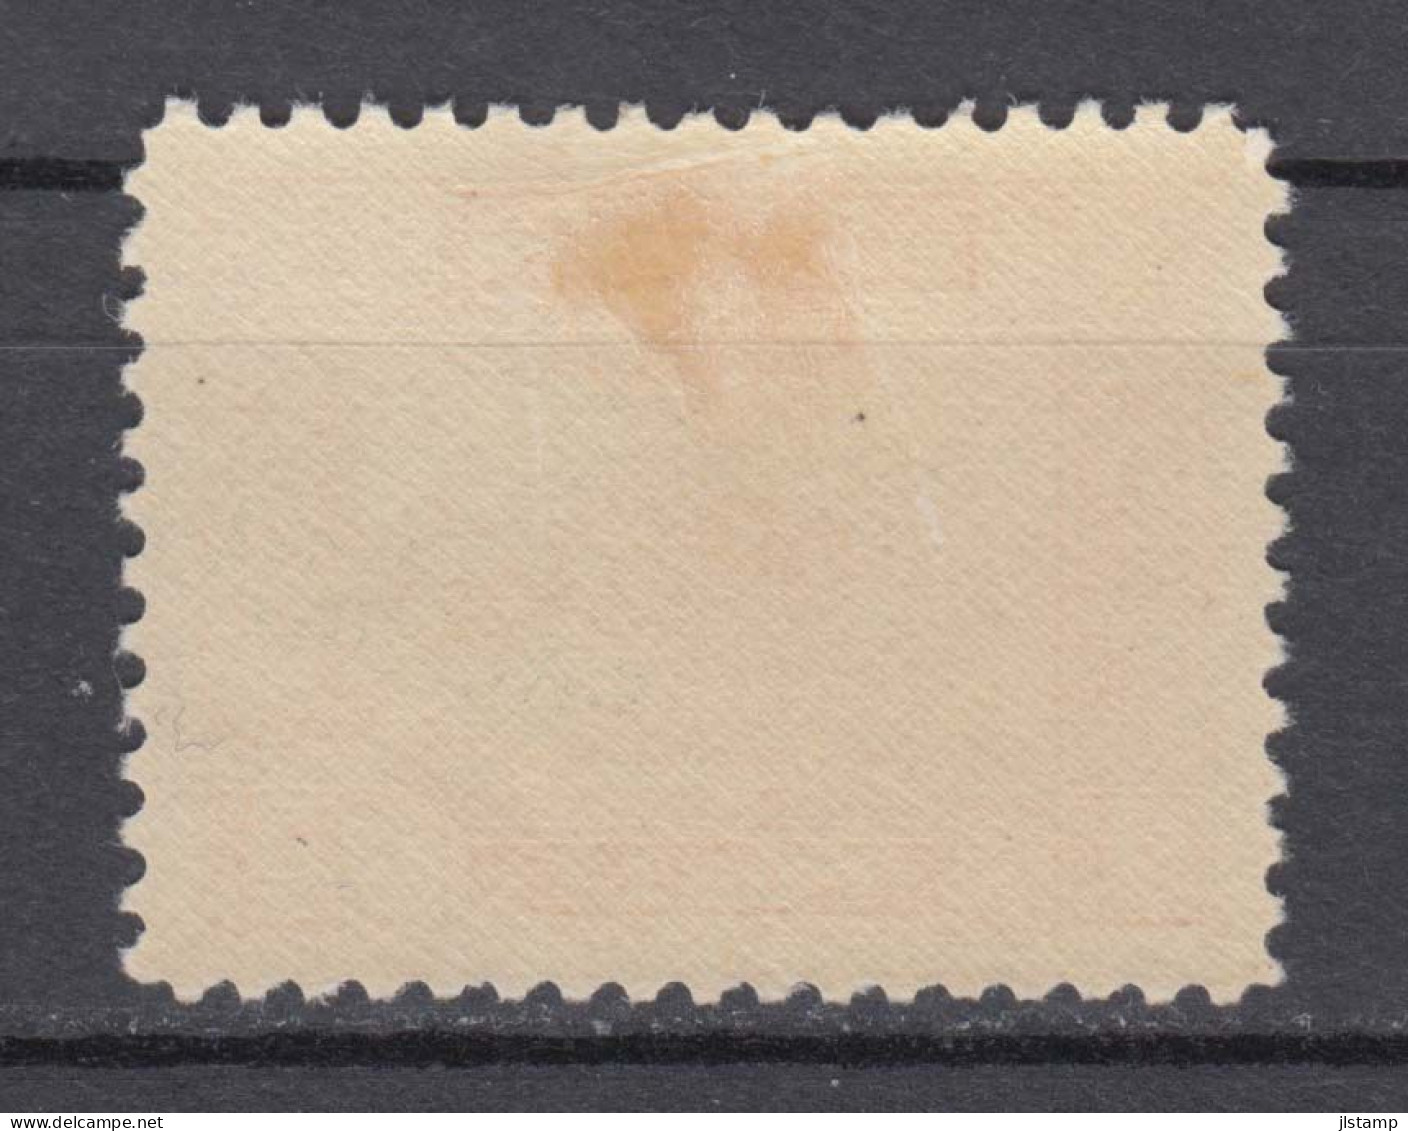 Turkey 1930 Railroad Bridge Stamp,3k,Scott# 688,OG MH,VF - Ungebraucht